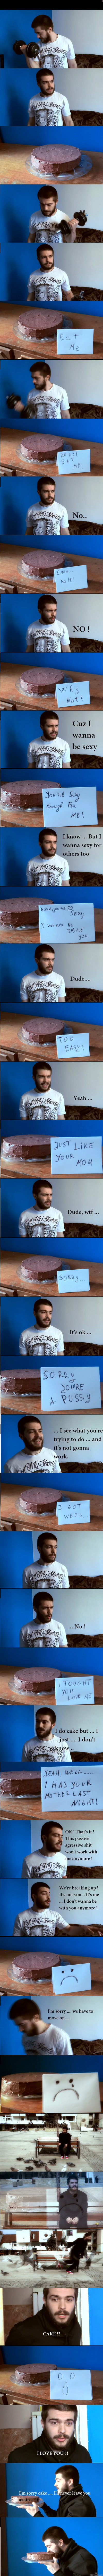 Cake - Miehen dramaattinen keskustelu kakun kanssa